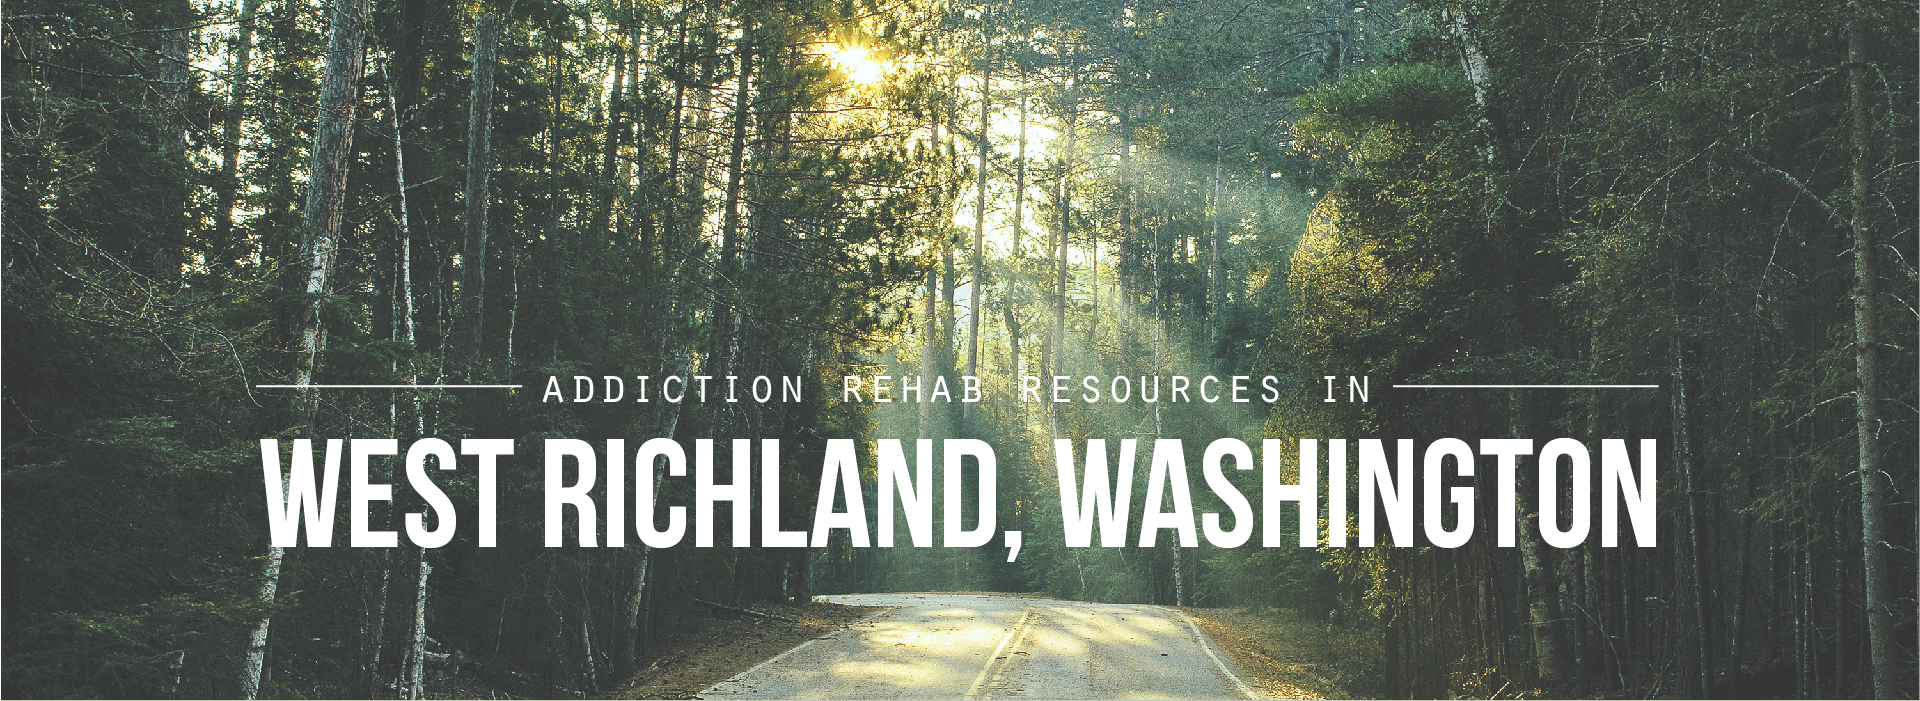 West Richland, Washington Addiction Resources